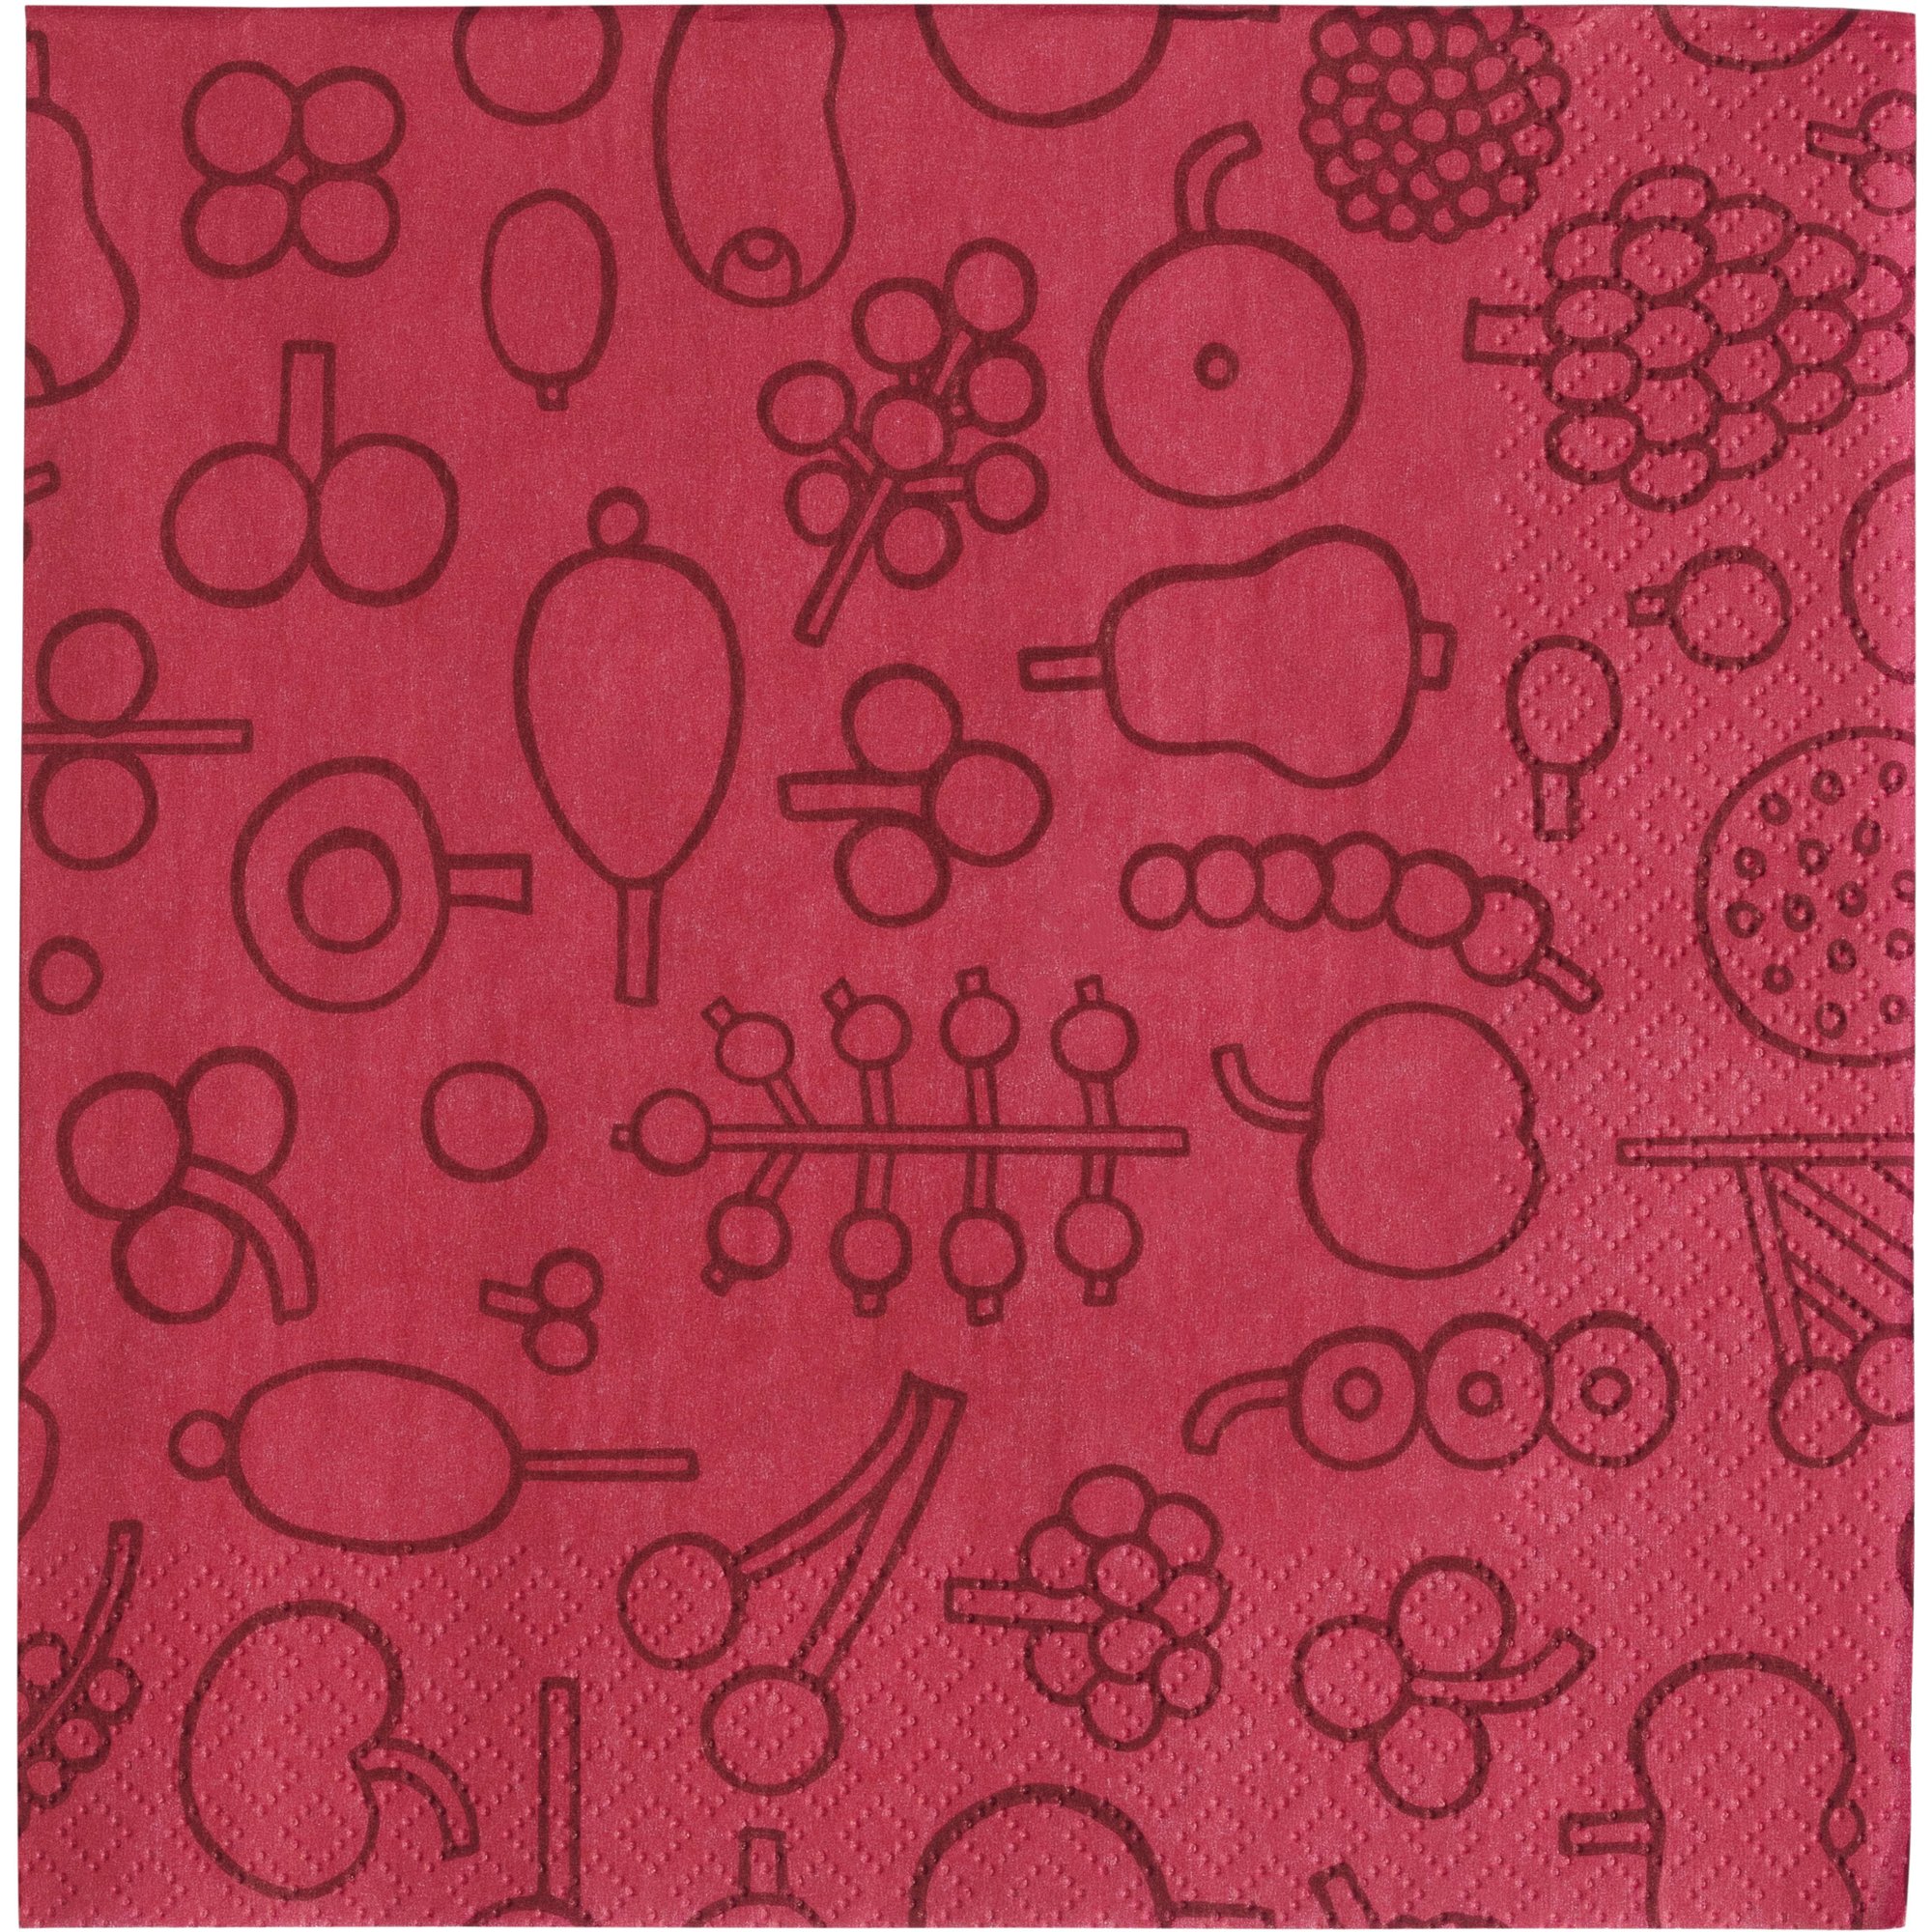 Iittala Oiva Toikka Collection paperilautasliina 33 cm punainen